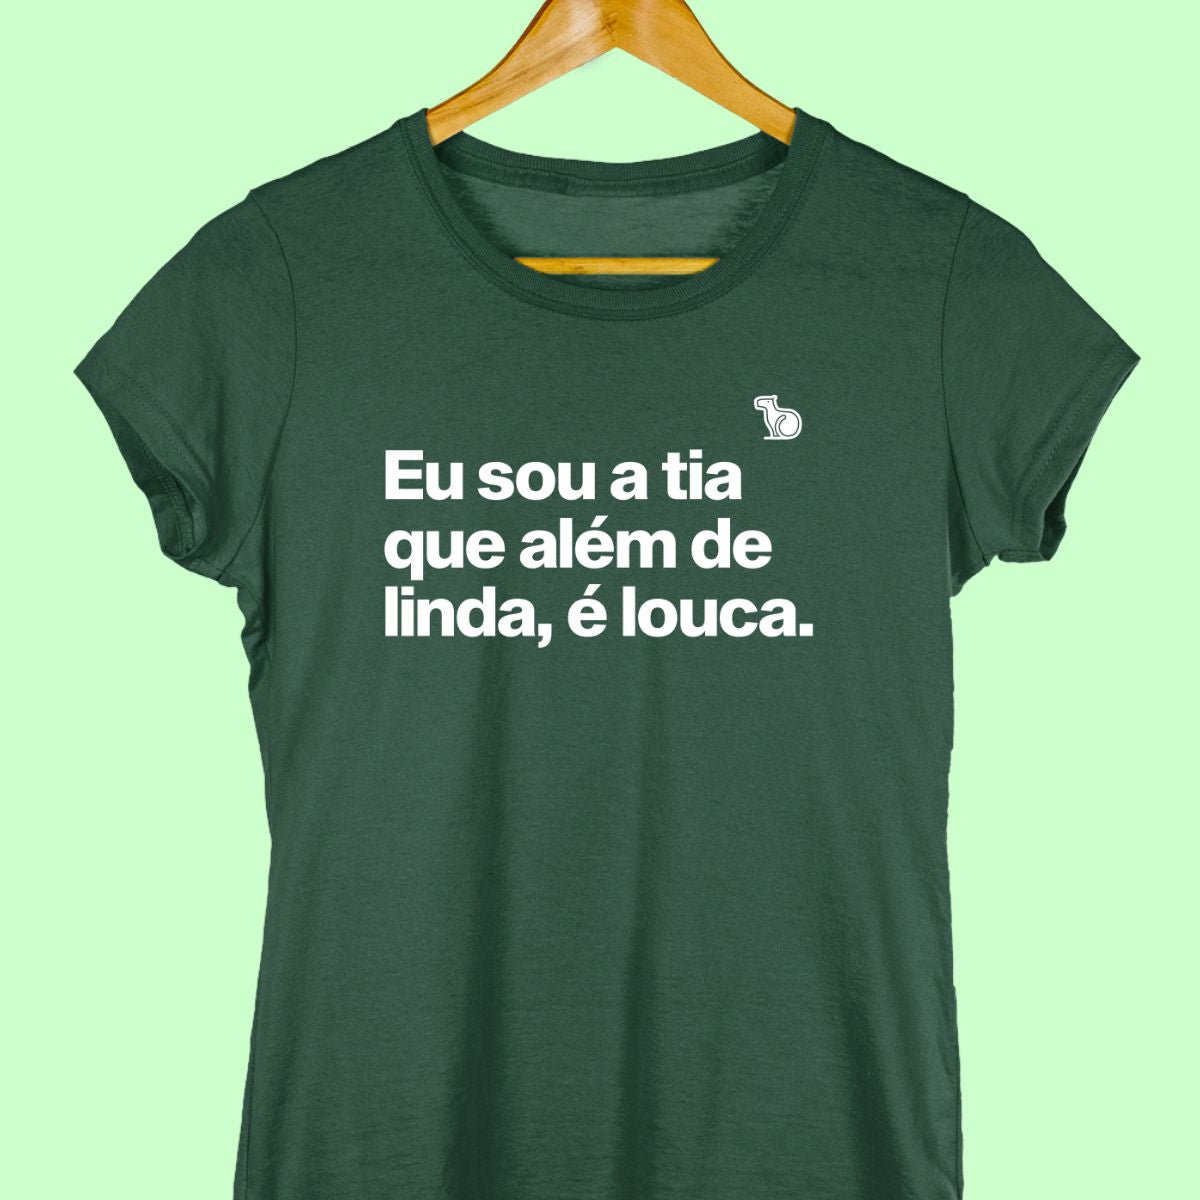 Camiseta com a frase "Eu sou a tia que além de linda, é louca." Feminina verde.